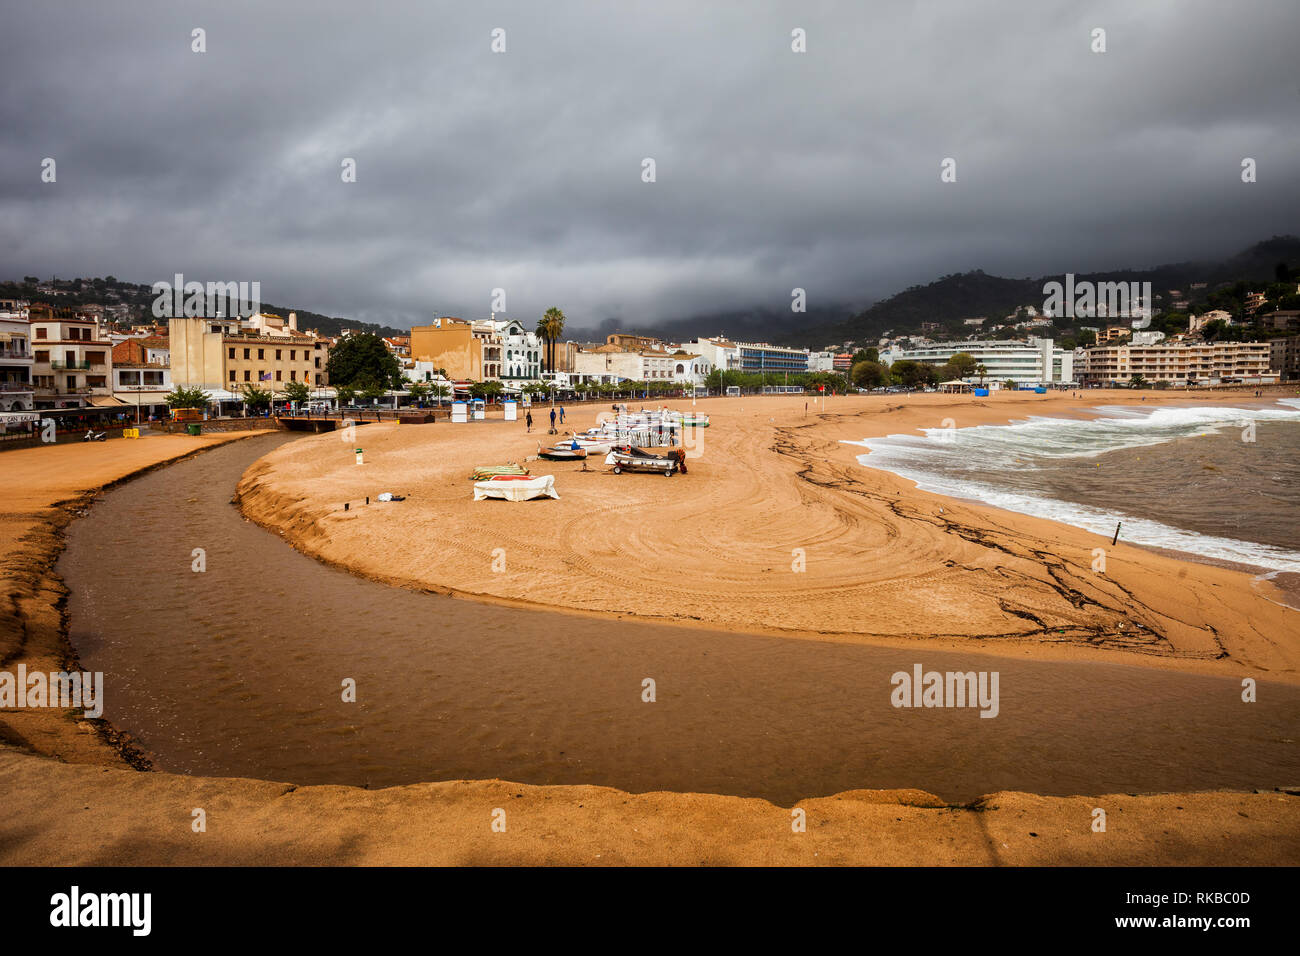 La ciudad de Tossa de Mar en Cataluña, España, la riera de Tossa, río, playa y el mar en día tempestuoso. Foto de stock